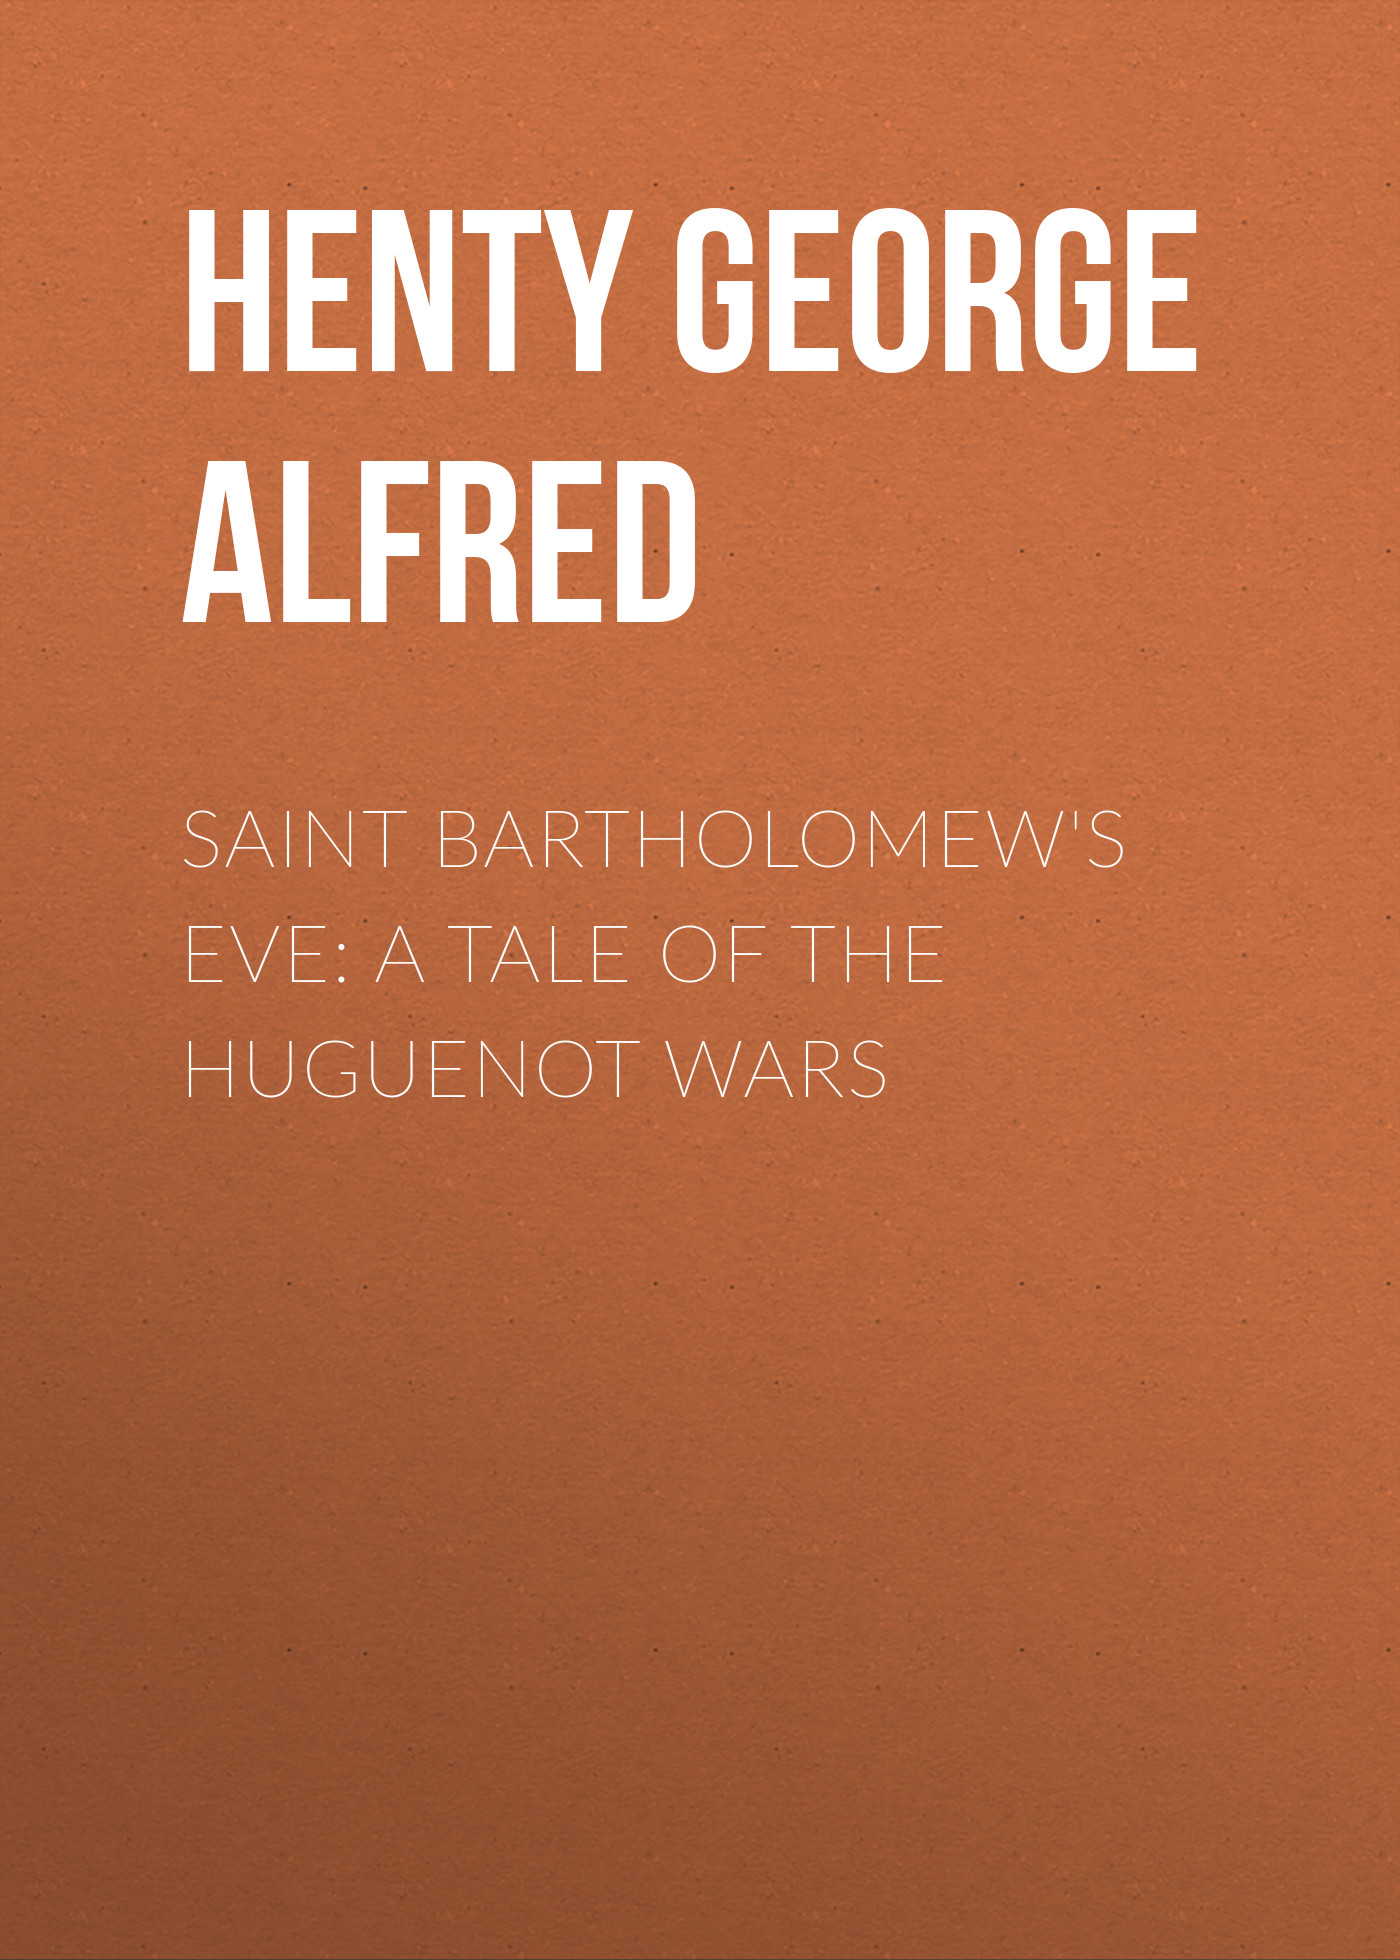 Скачать Saint Bartholomew's Eve: A Tale of the Huguenot Wars - Henty George Alfred